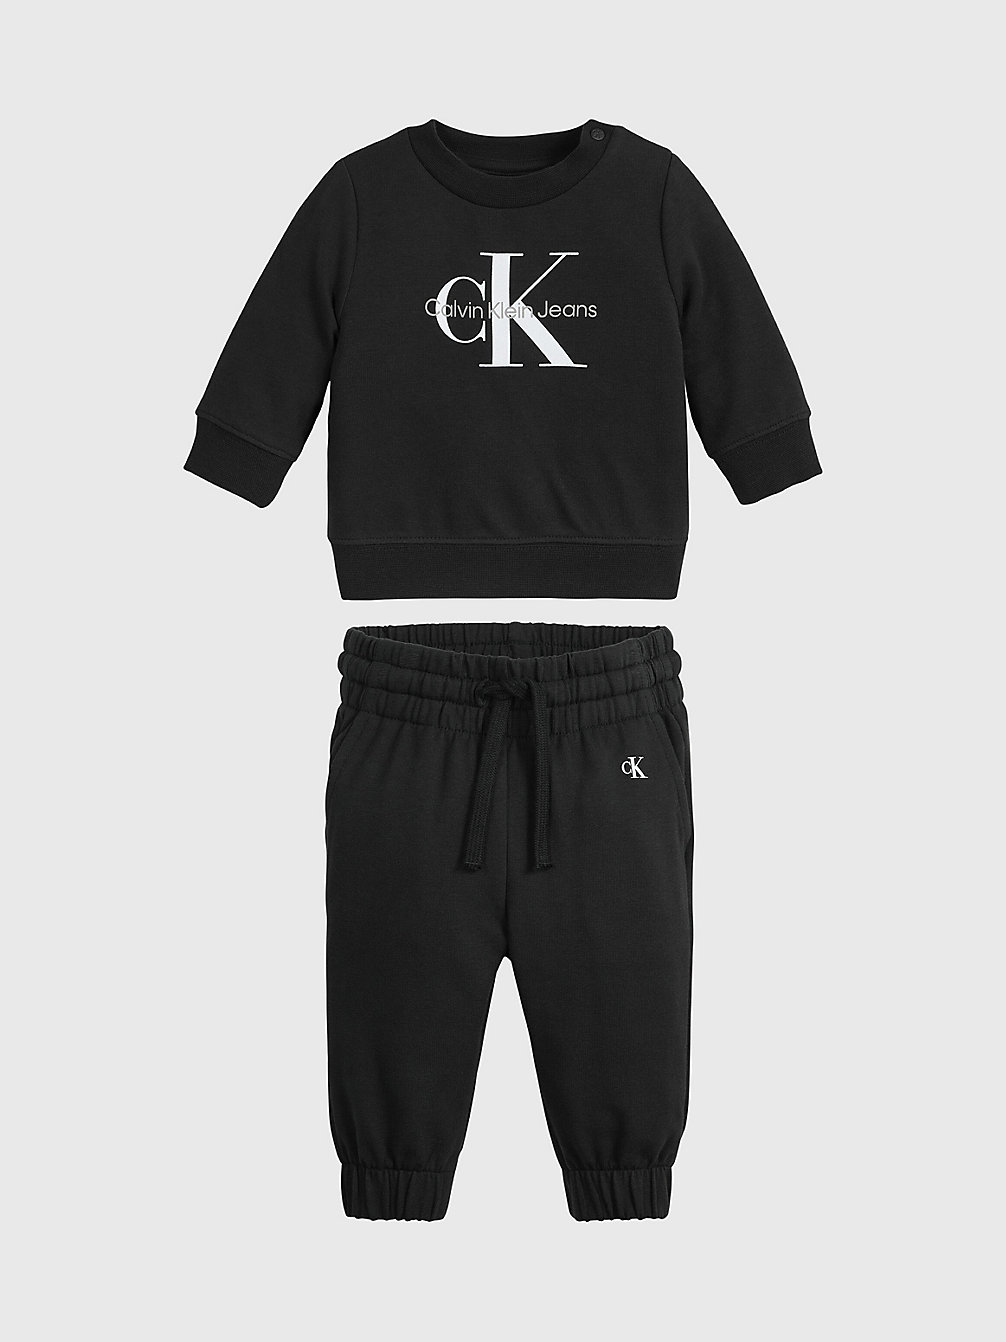 CK BLACK Logo-Trainingsanzug Für Babys undefined newborn Calvin Klein